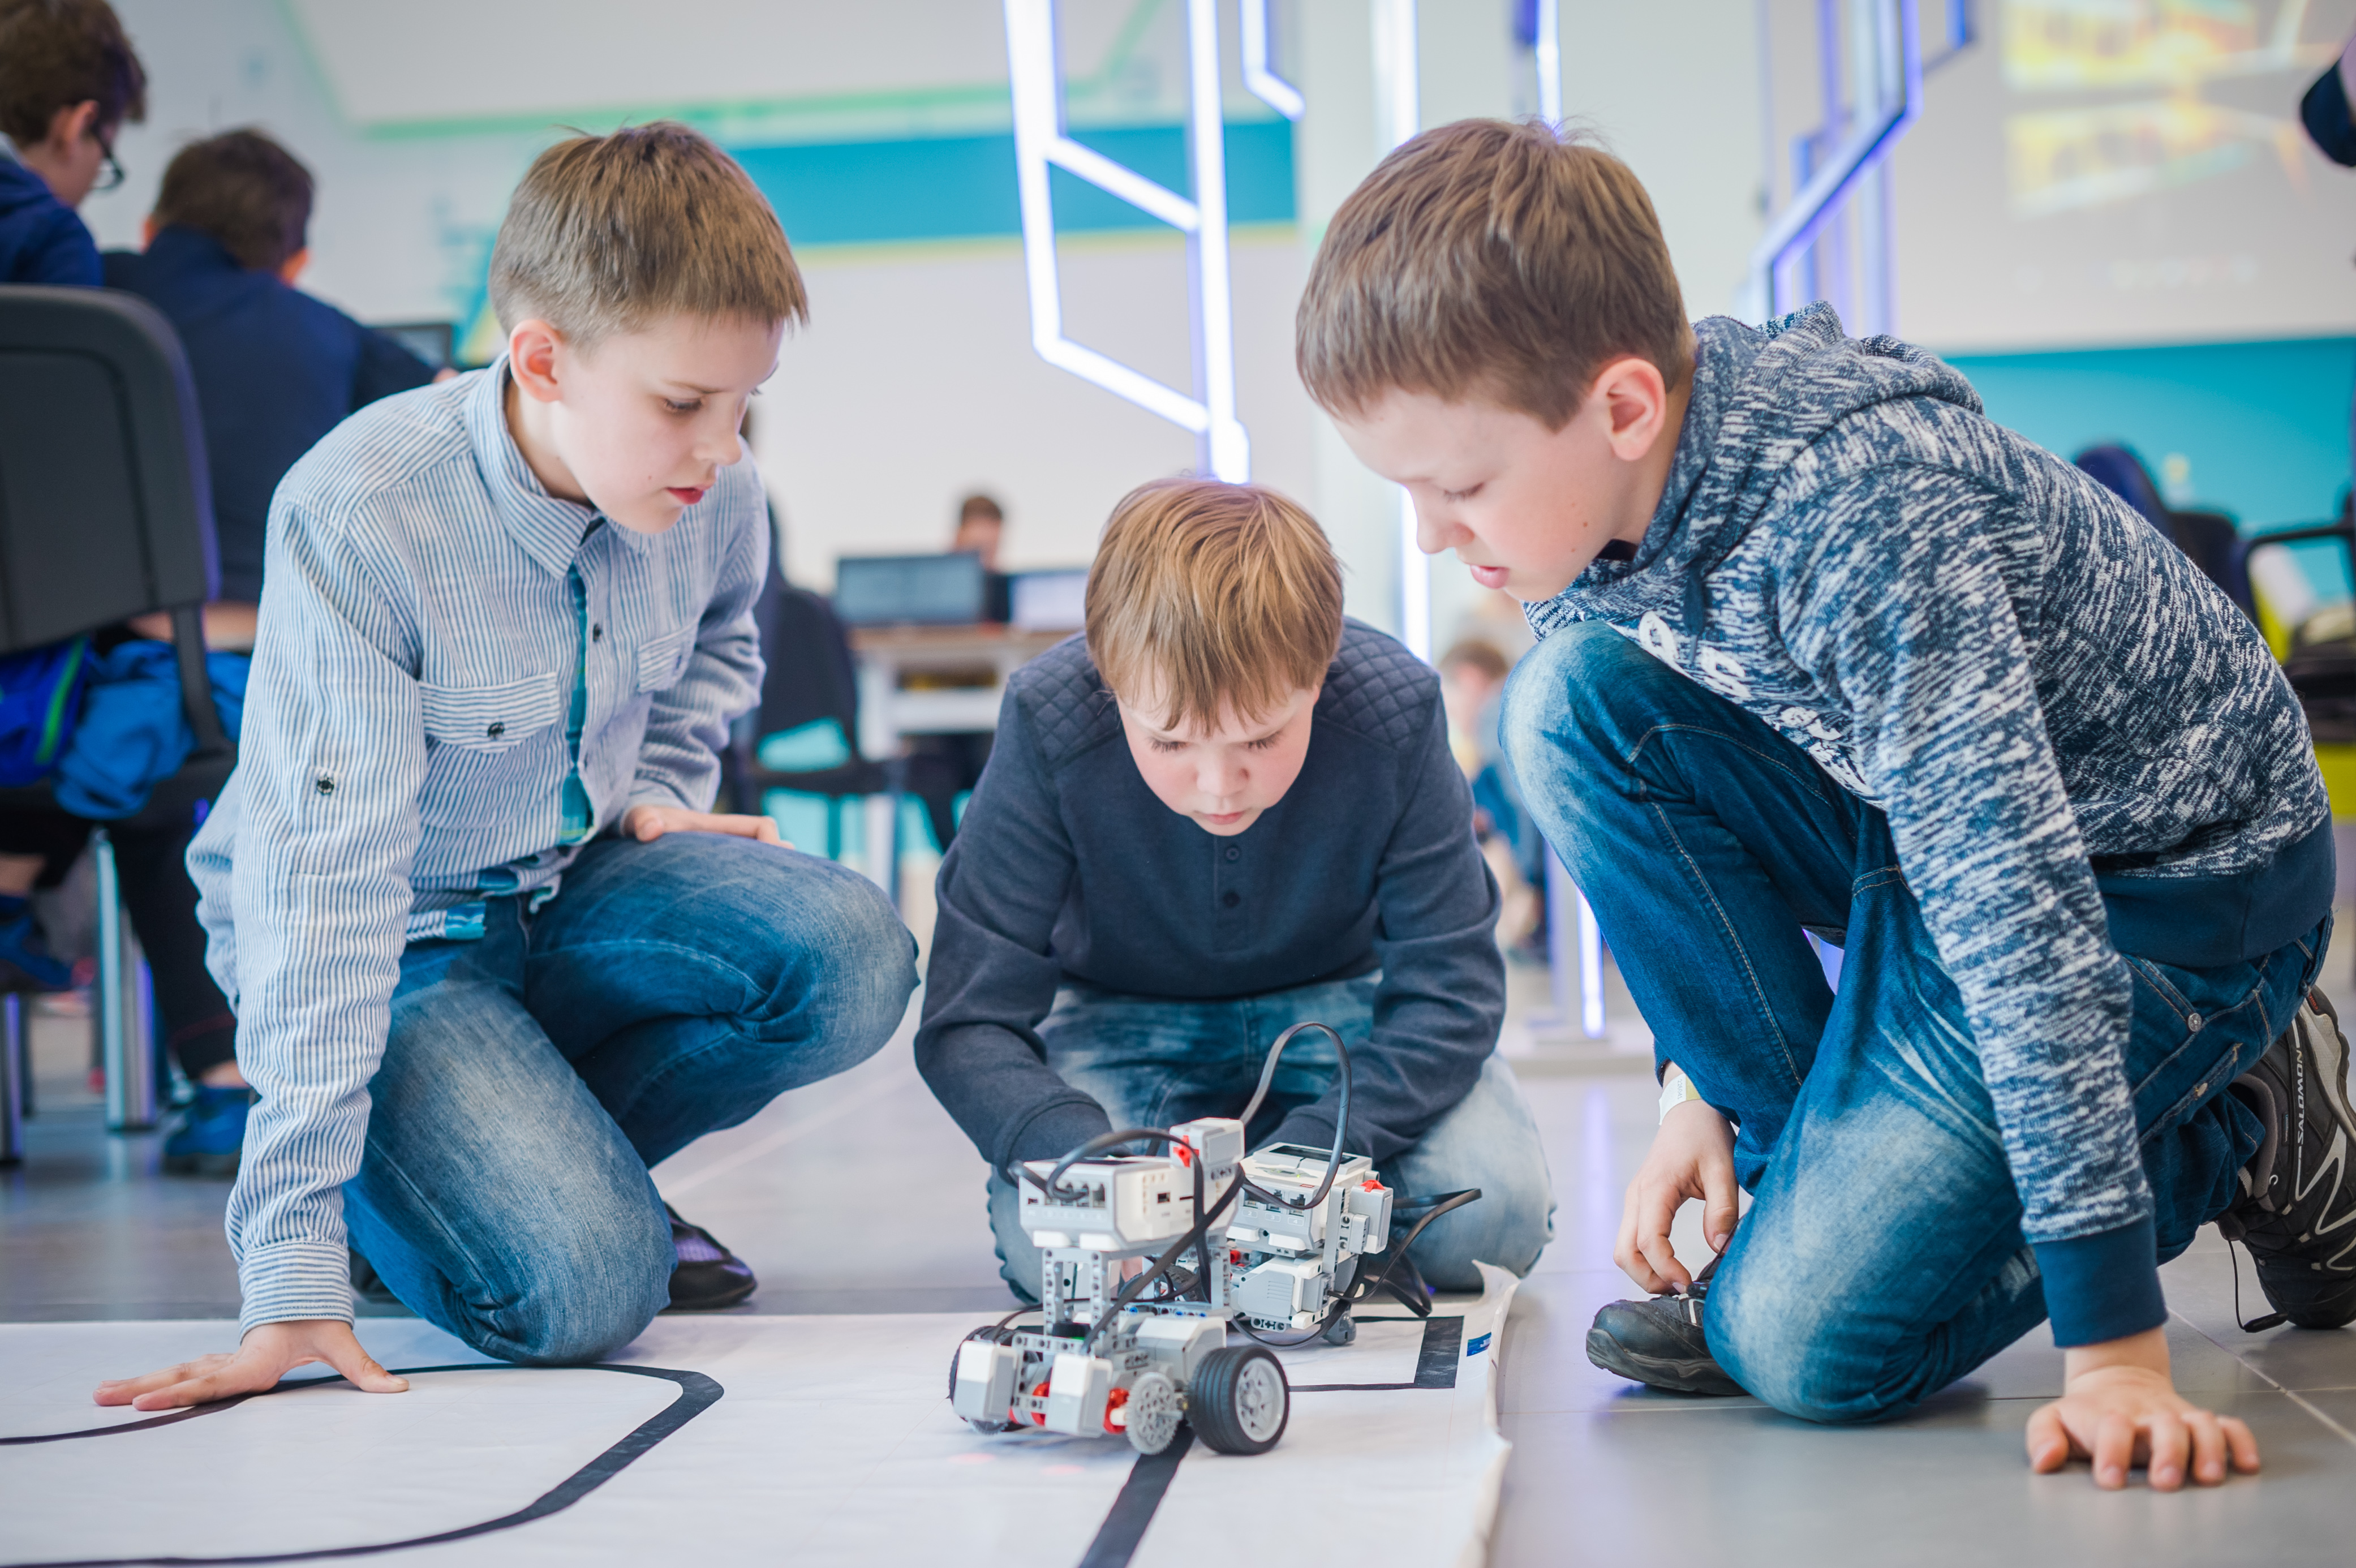 В кружке робототехники занимаются ученики разных классов